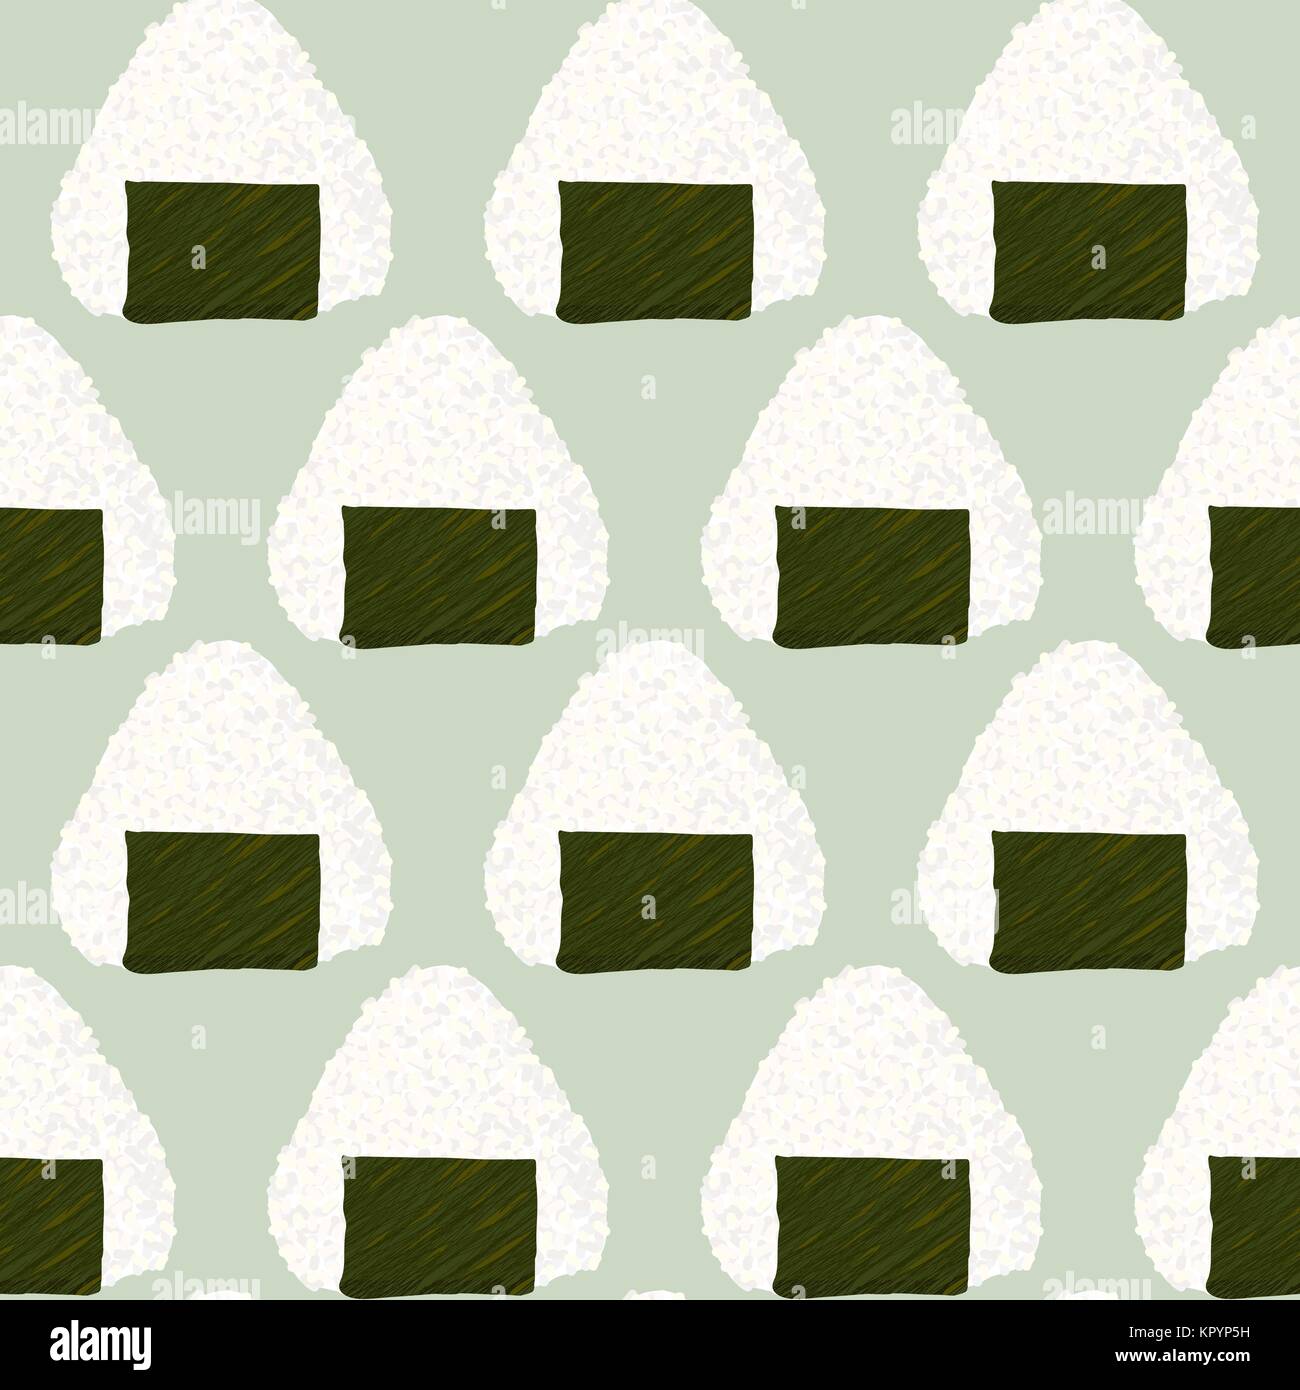 Onigiri (japanische Reis ball) Hintergrund. Nahtlose Muster. Asiatische Snacks. Mittagessen Textur. Dreieck Reisbällchen aufgewickelt mit Nori Algen. Für Tapeten, p Stock Vektor